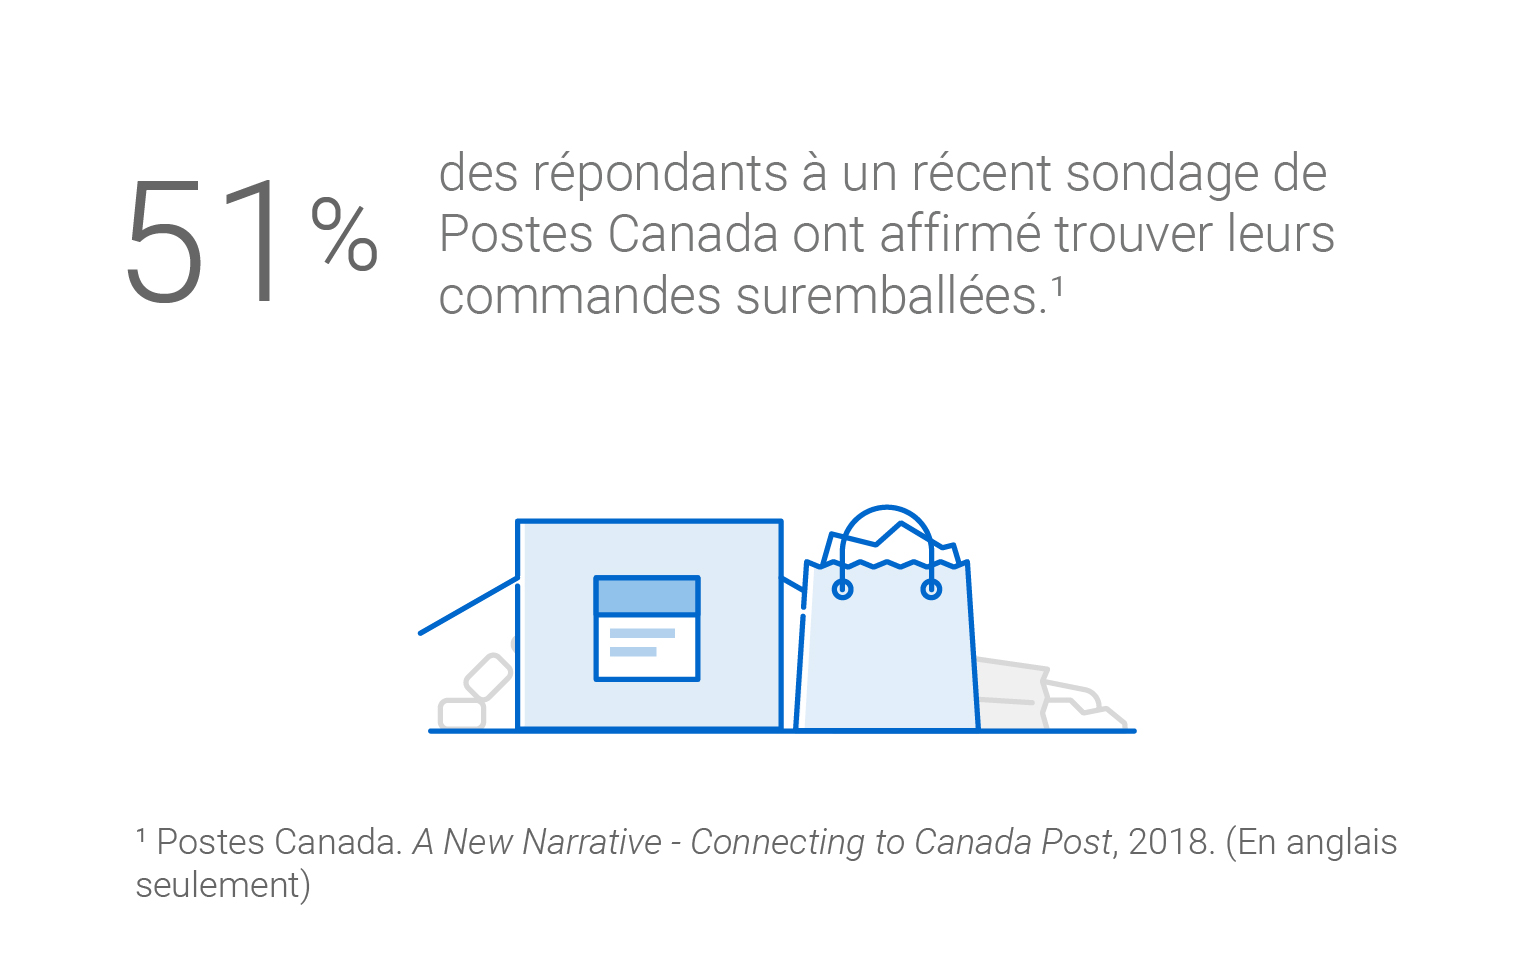 51 % des répondants à un récent sondage de Postes Canada ont affirmé trouver leurs commandes suremballées. Source : Rapport quantitatif de 2018 A New Narrative – Connecting to Canada Post. (En anglais seulement)